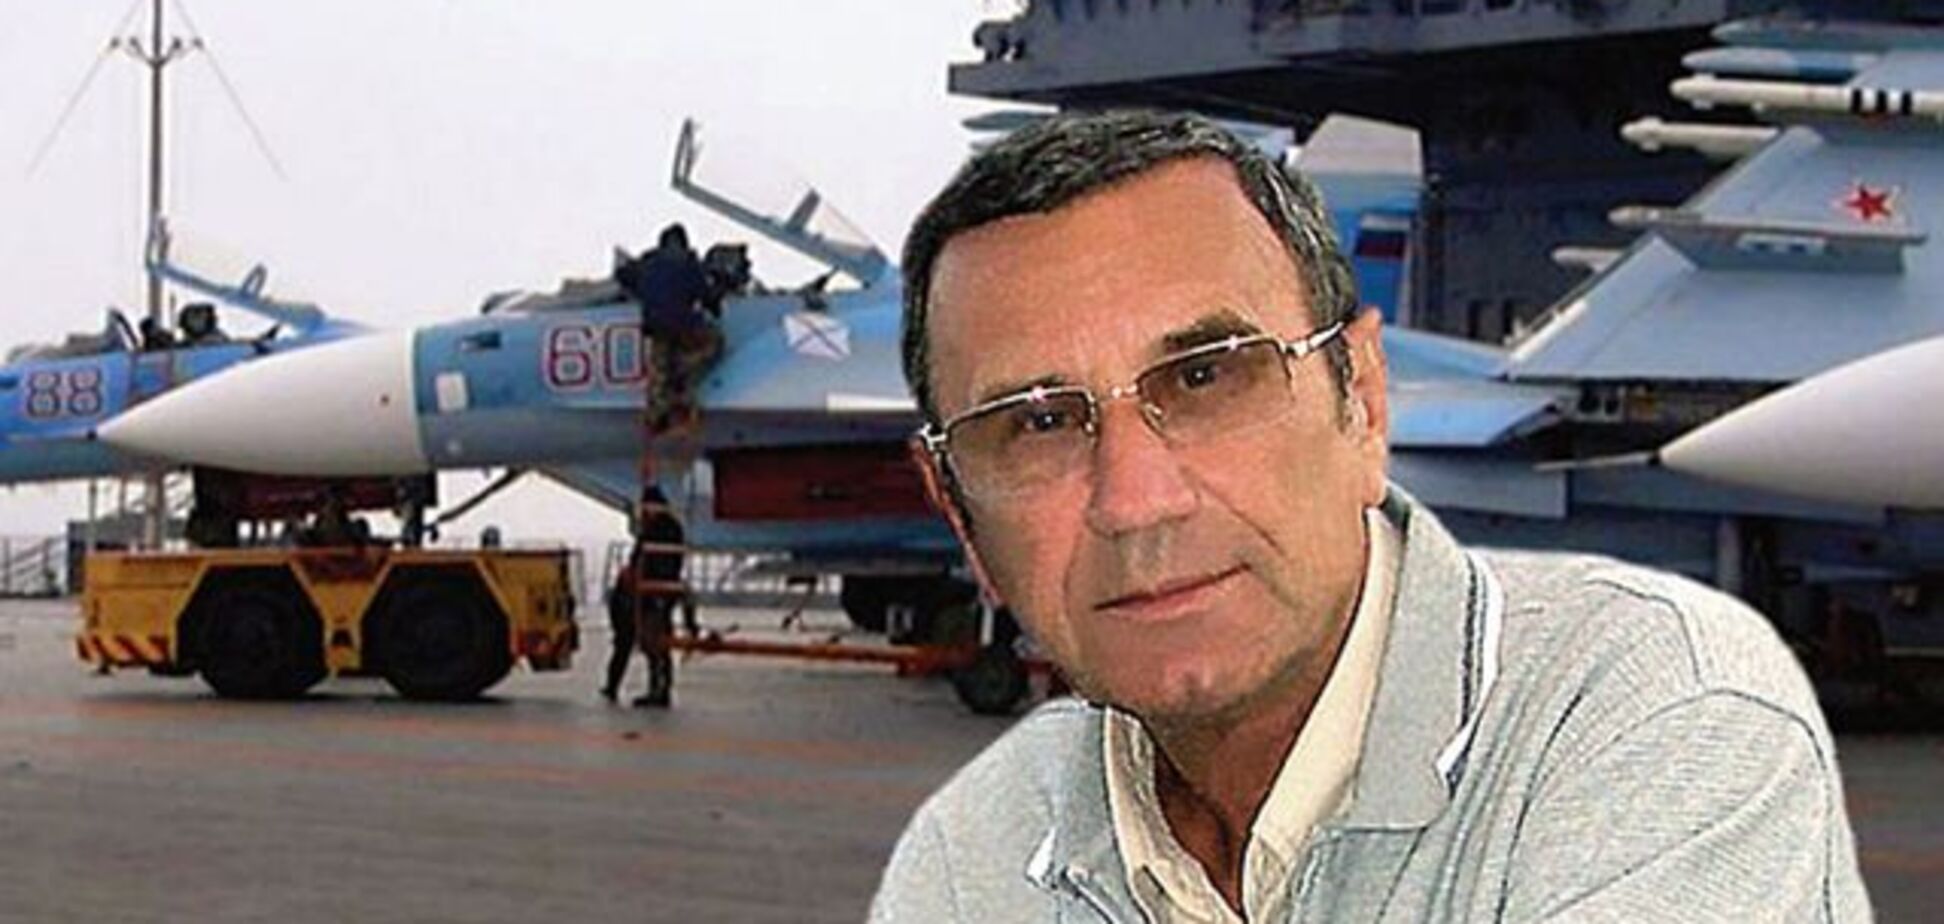 Російська пропаганда відзначилася 'фейком' про знаменитого українського суднобудівника